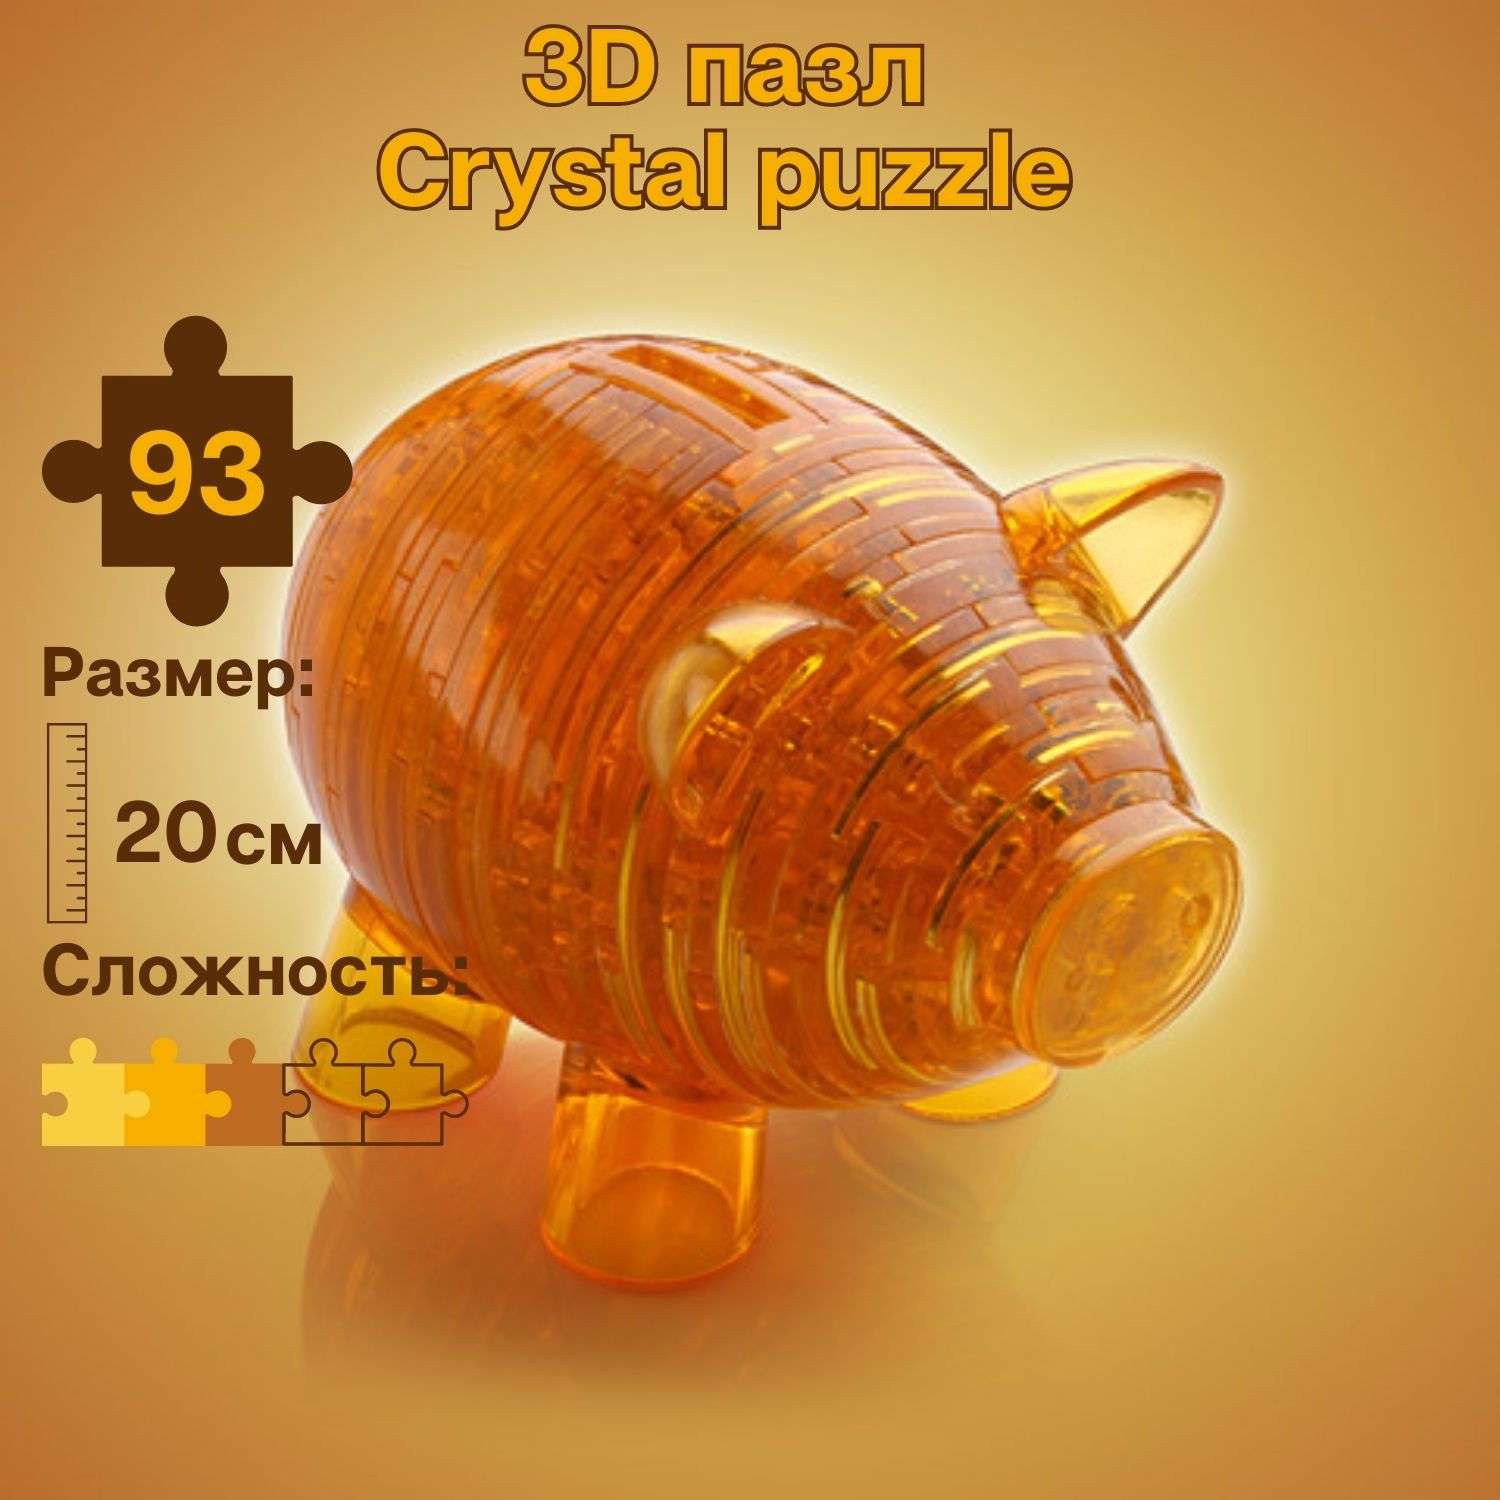 3D-пазл Crystal Puzzle IQ игра для детей кристальная Свинка копилка золотая 93 детали - фото 1